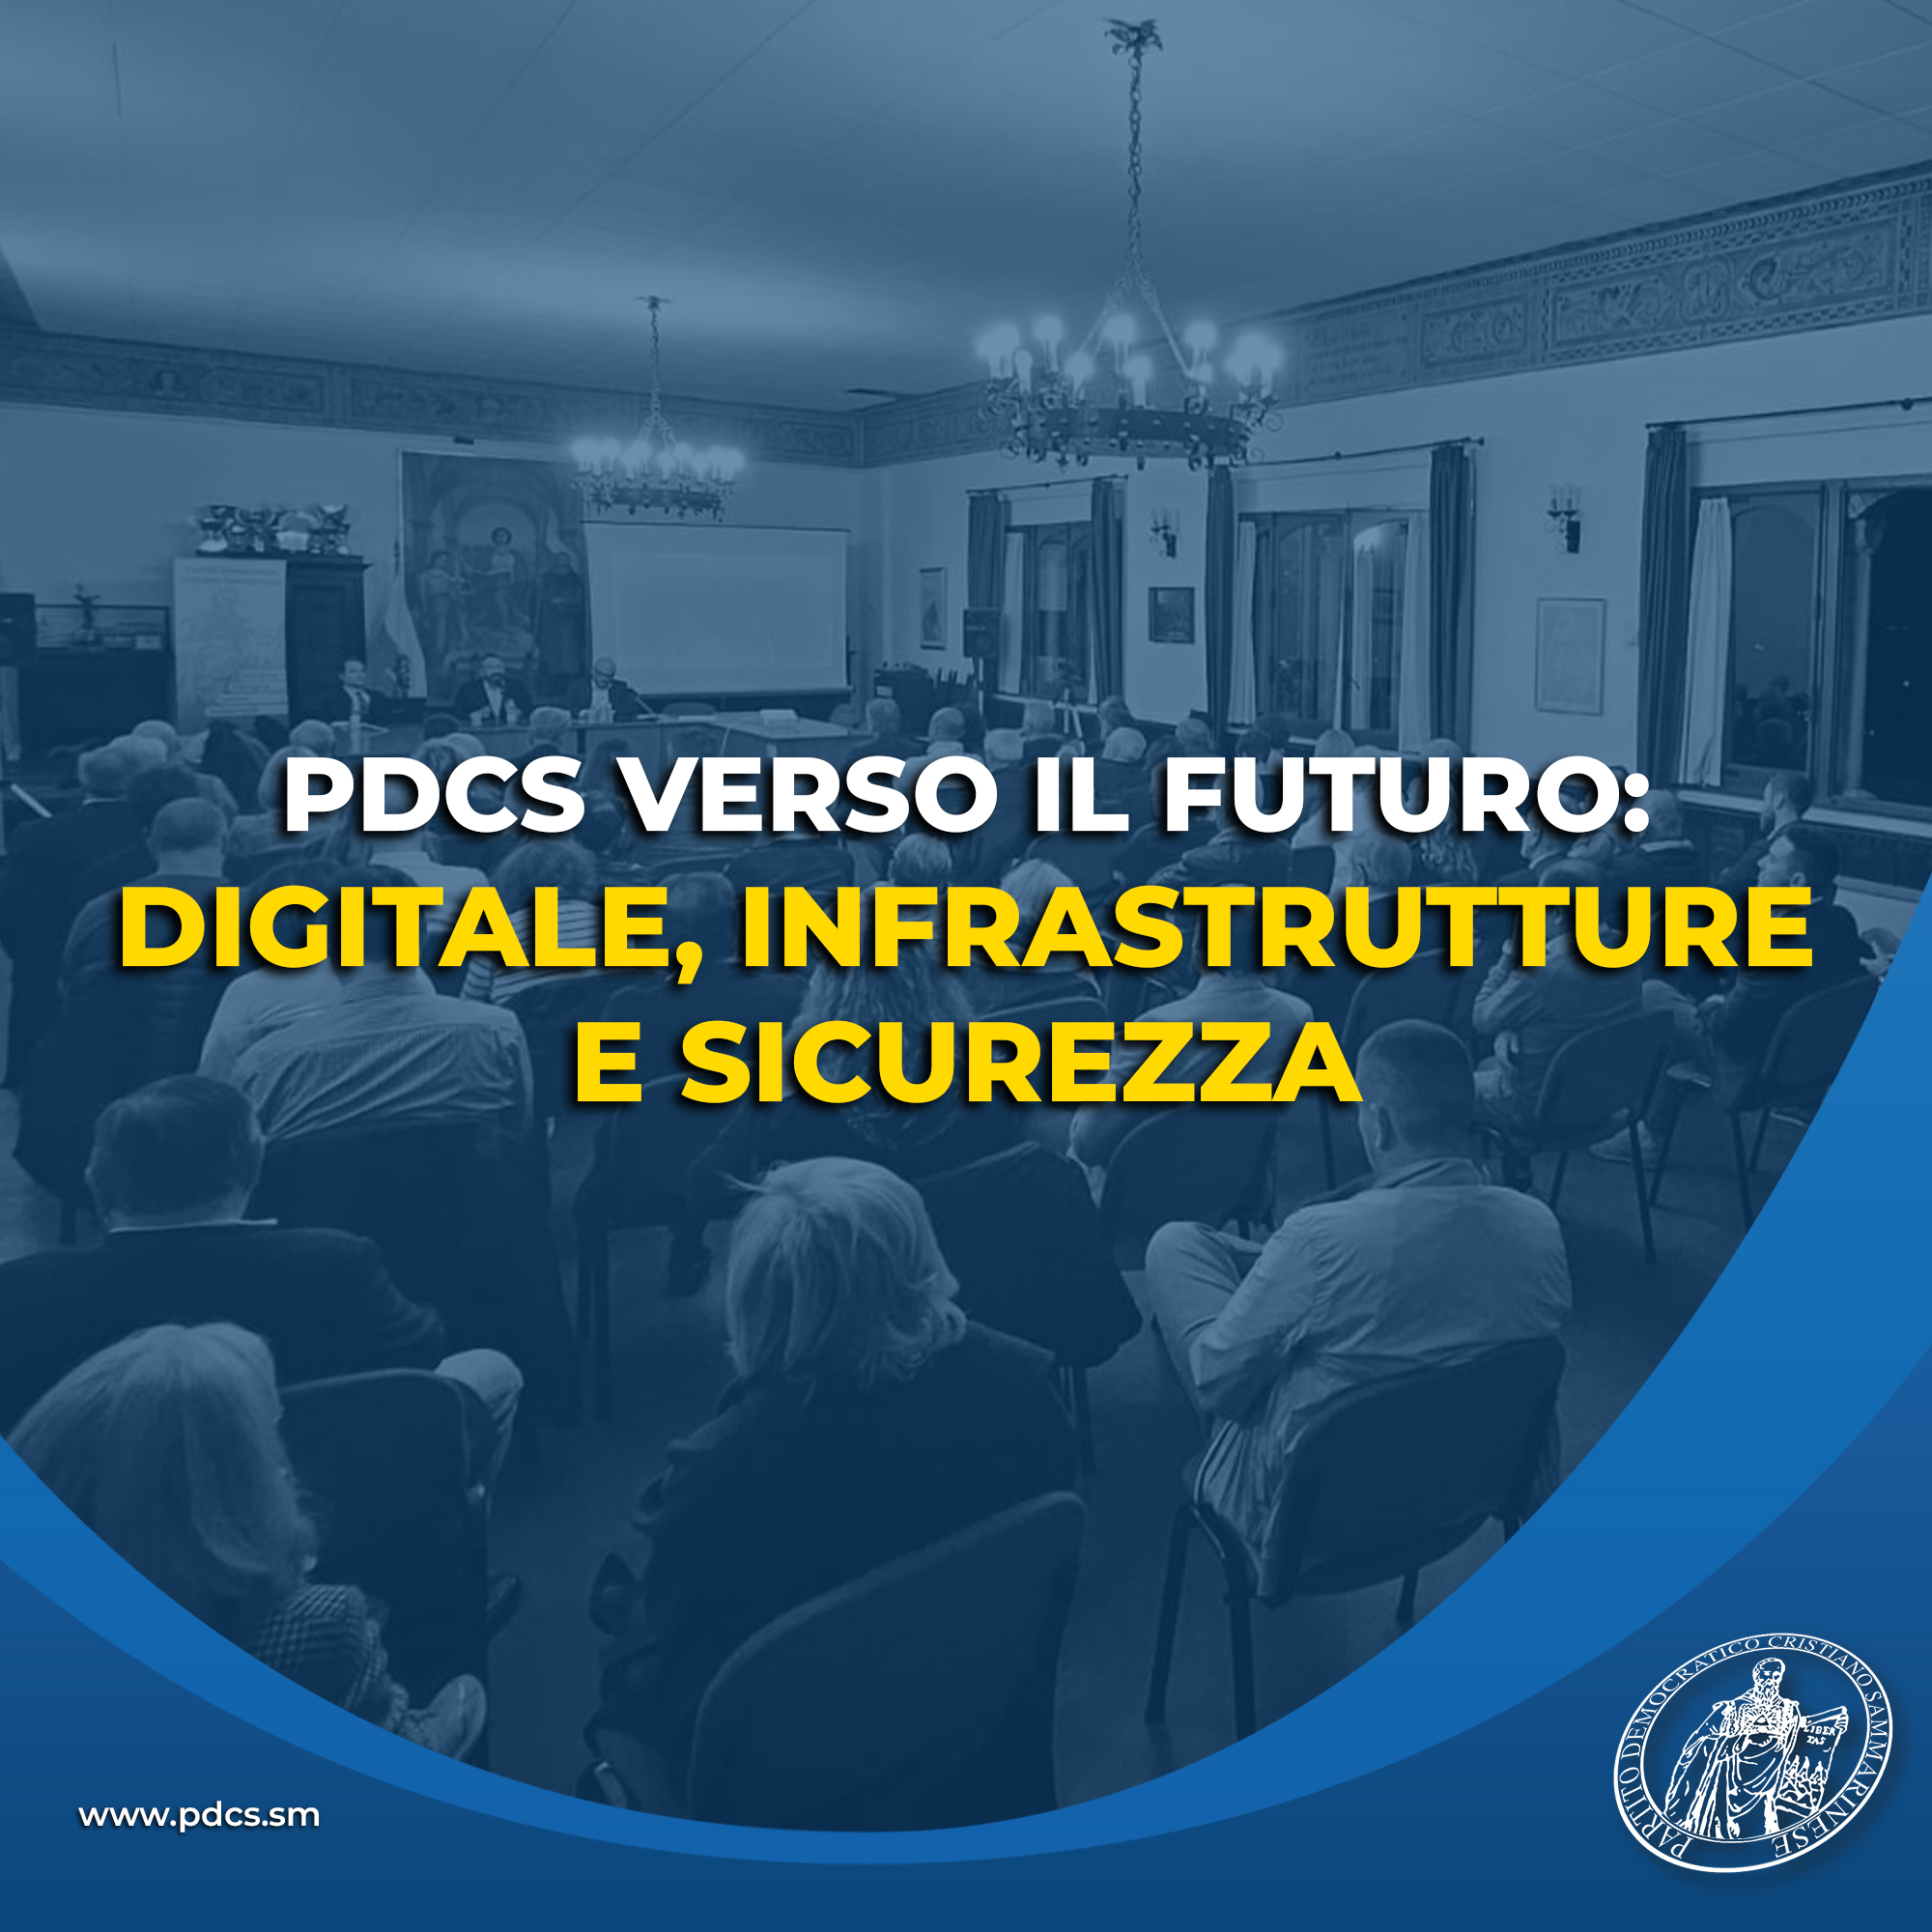 PDCS verso il futuro: incontro su digitale, infrastrutture e sicurezza